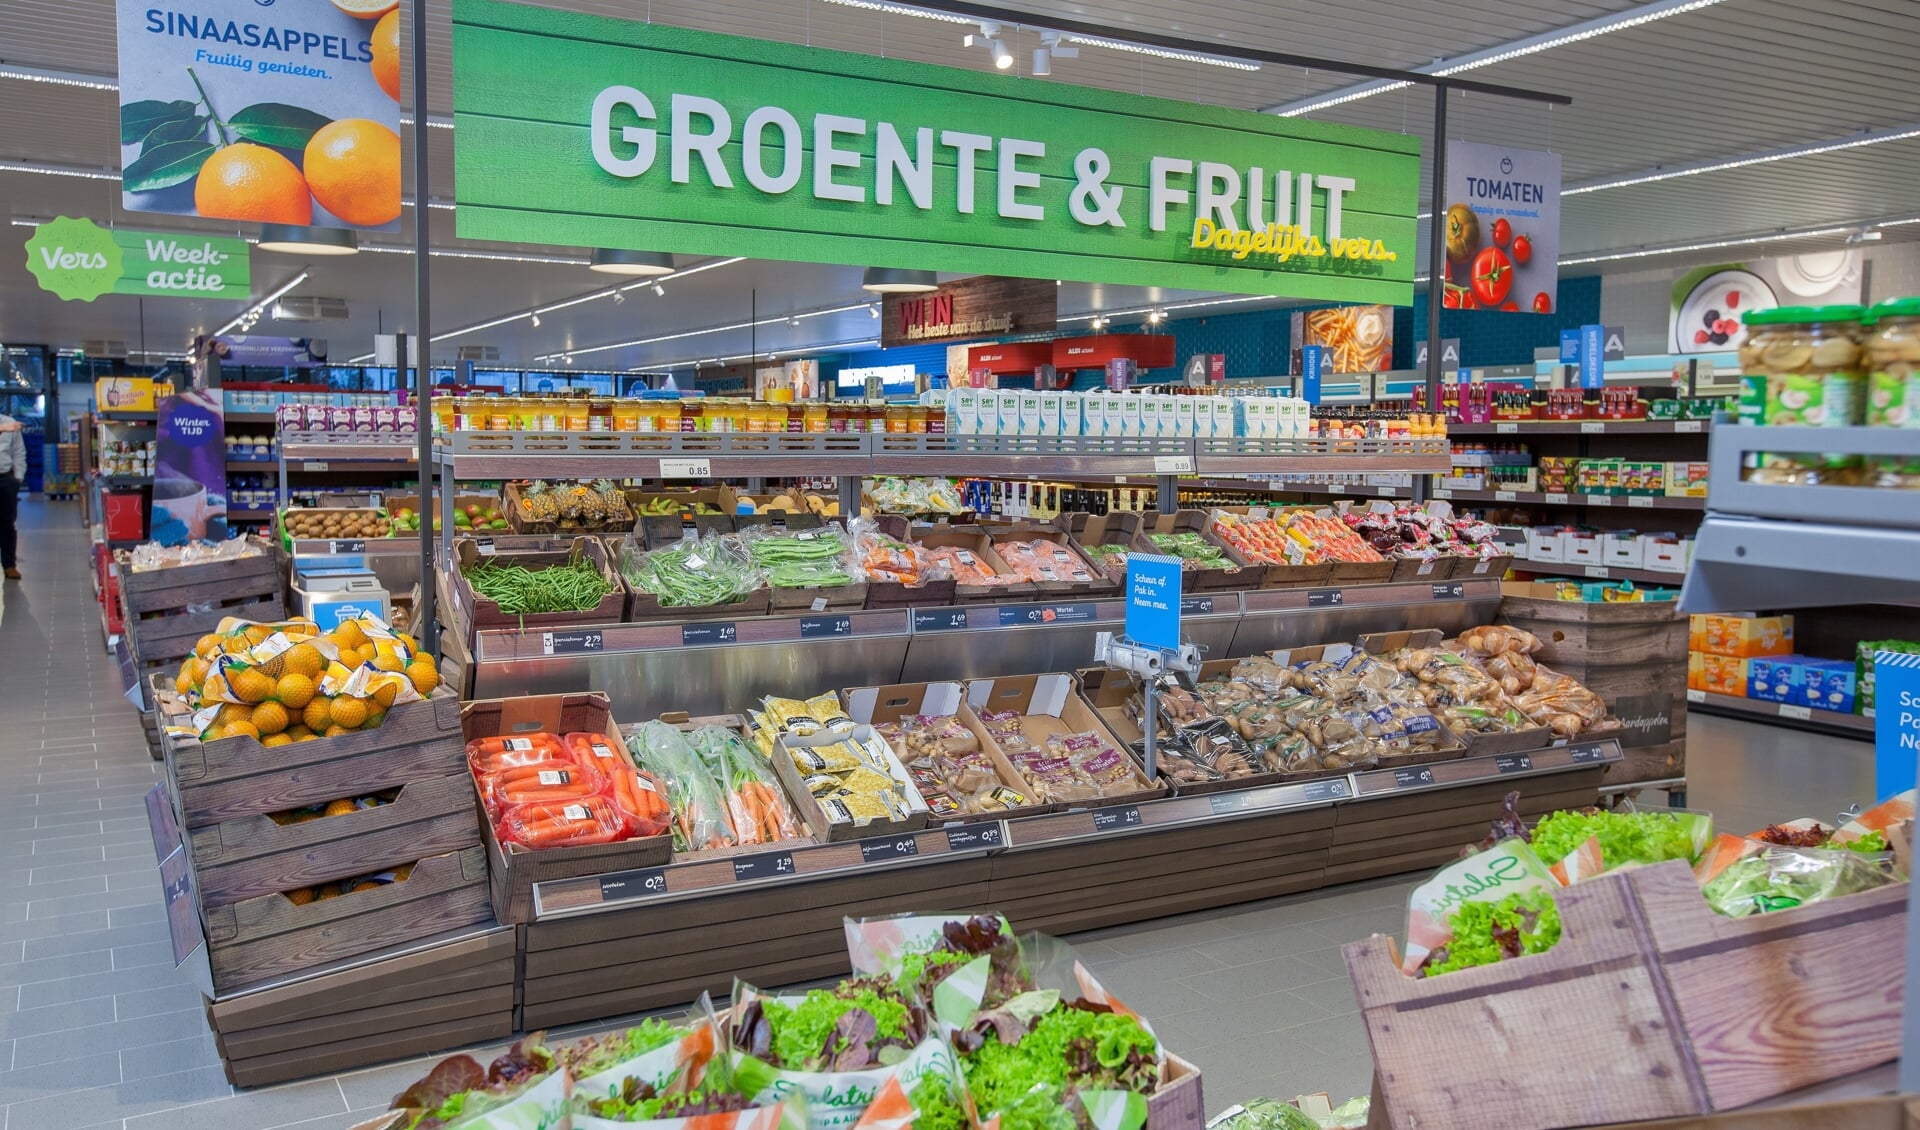 • In de winkel ligt de nadruk op veel verse producten zoals vlees, vis, groente en fruit.